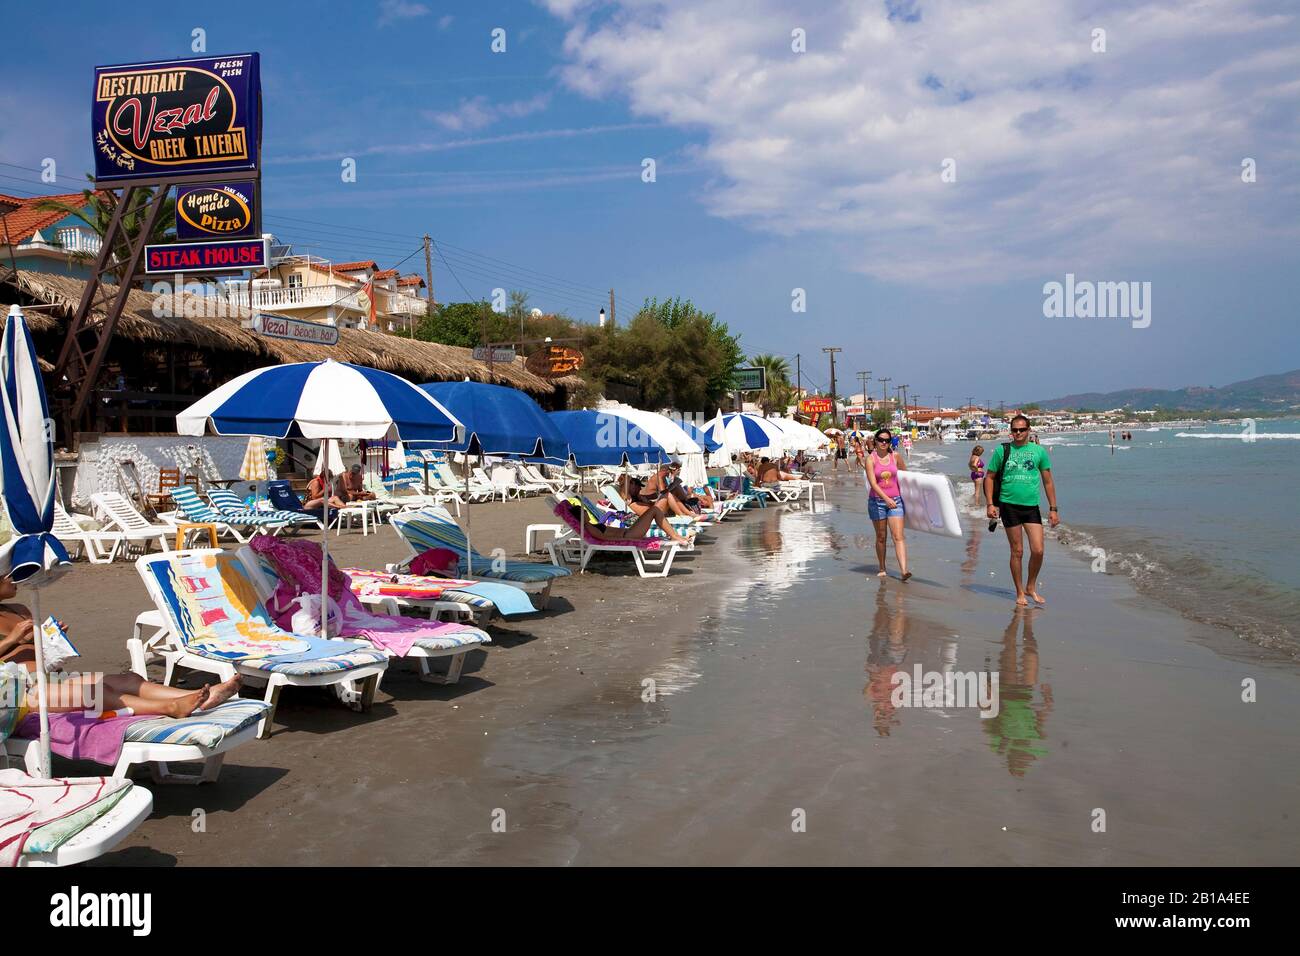 Urlauber am Sandstrand von Laganas, touristischer Ort auf der Insel Zakynthos, Griechenland | People at the beach of Laganas, Zakynthos island, Greece Stock Photo